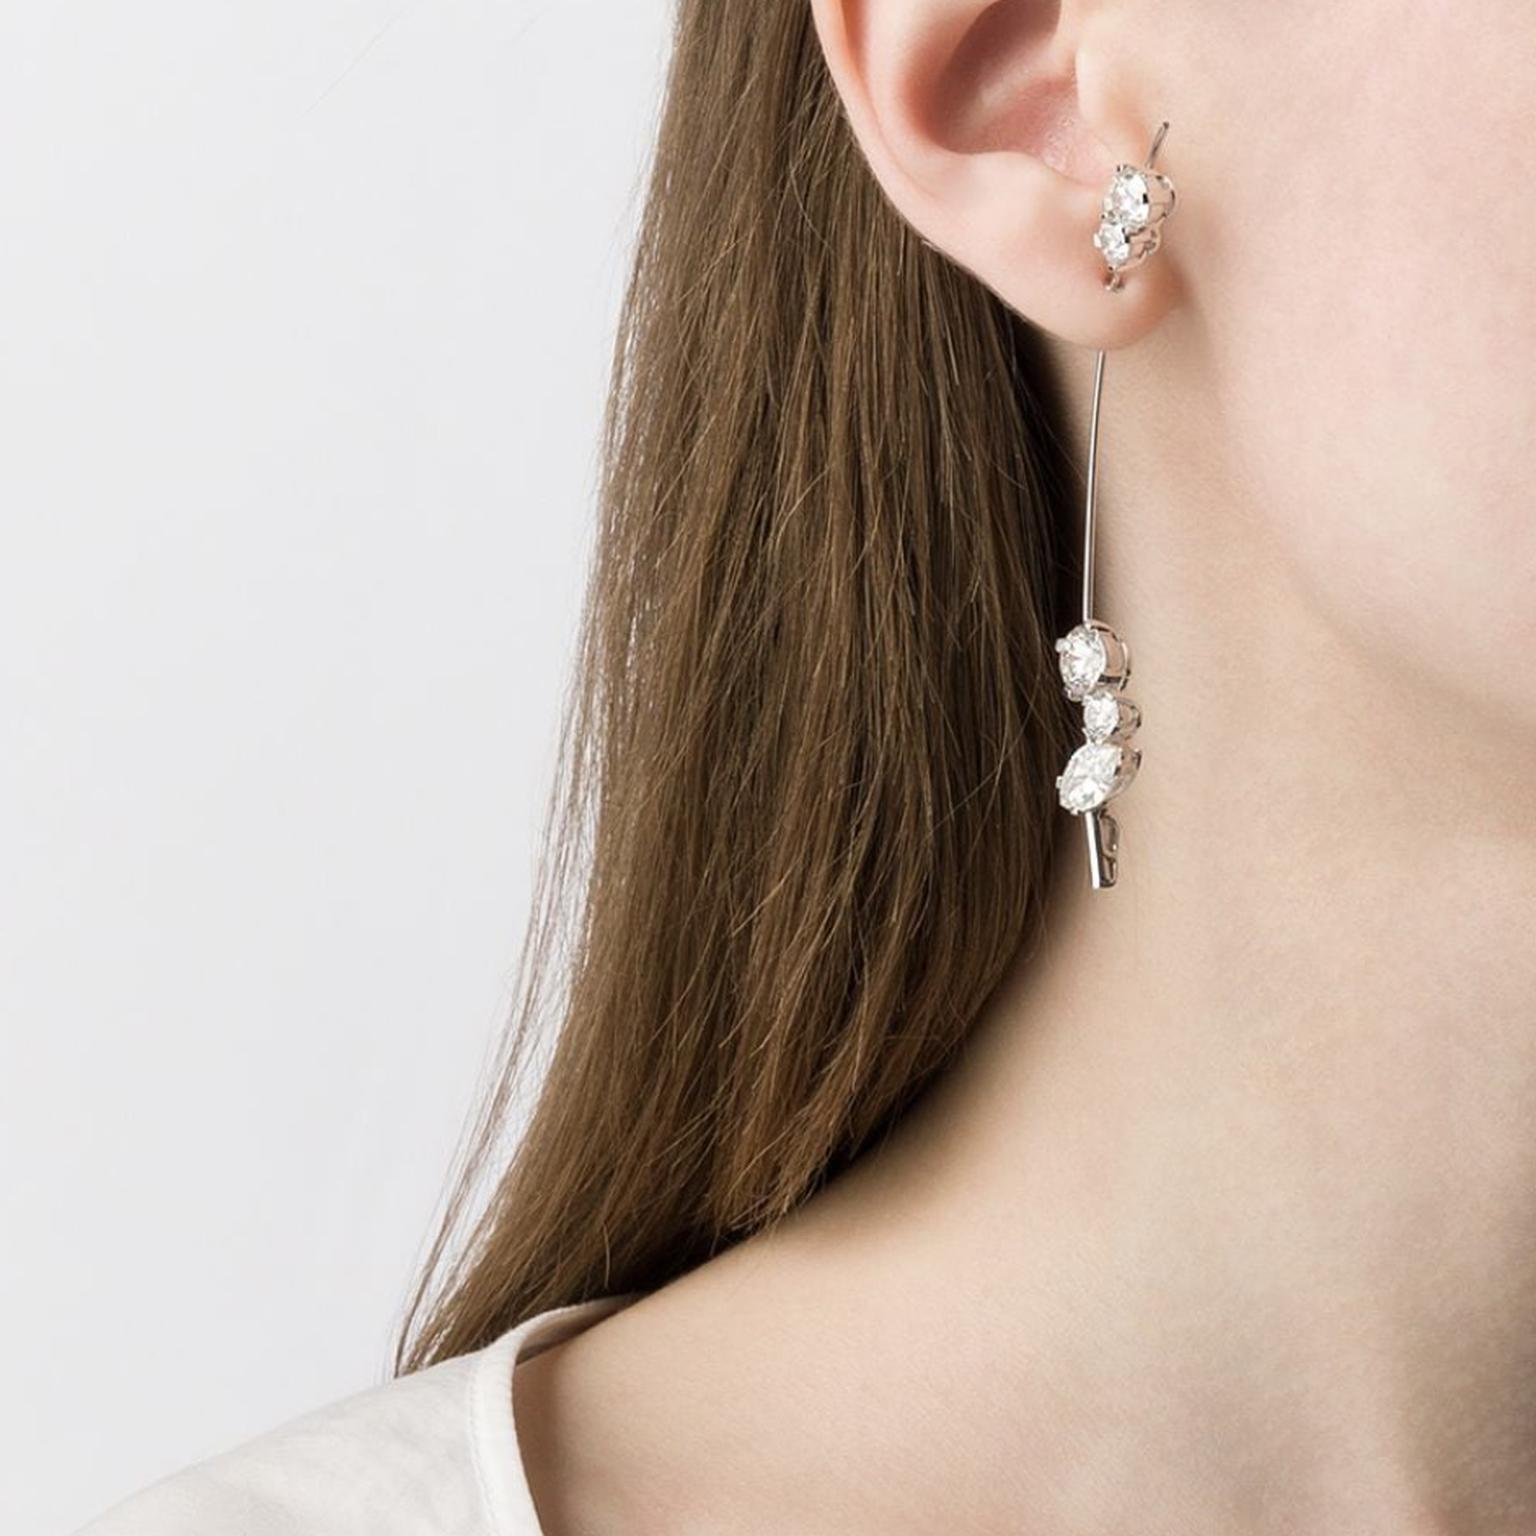 Earring by Sophie Bille Brahe on model